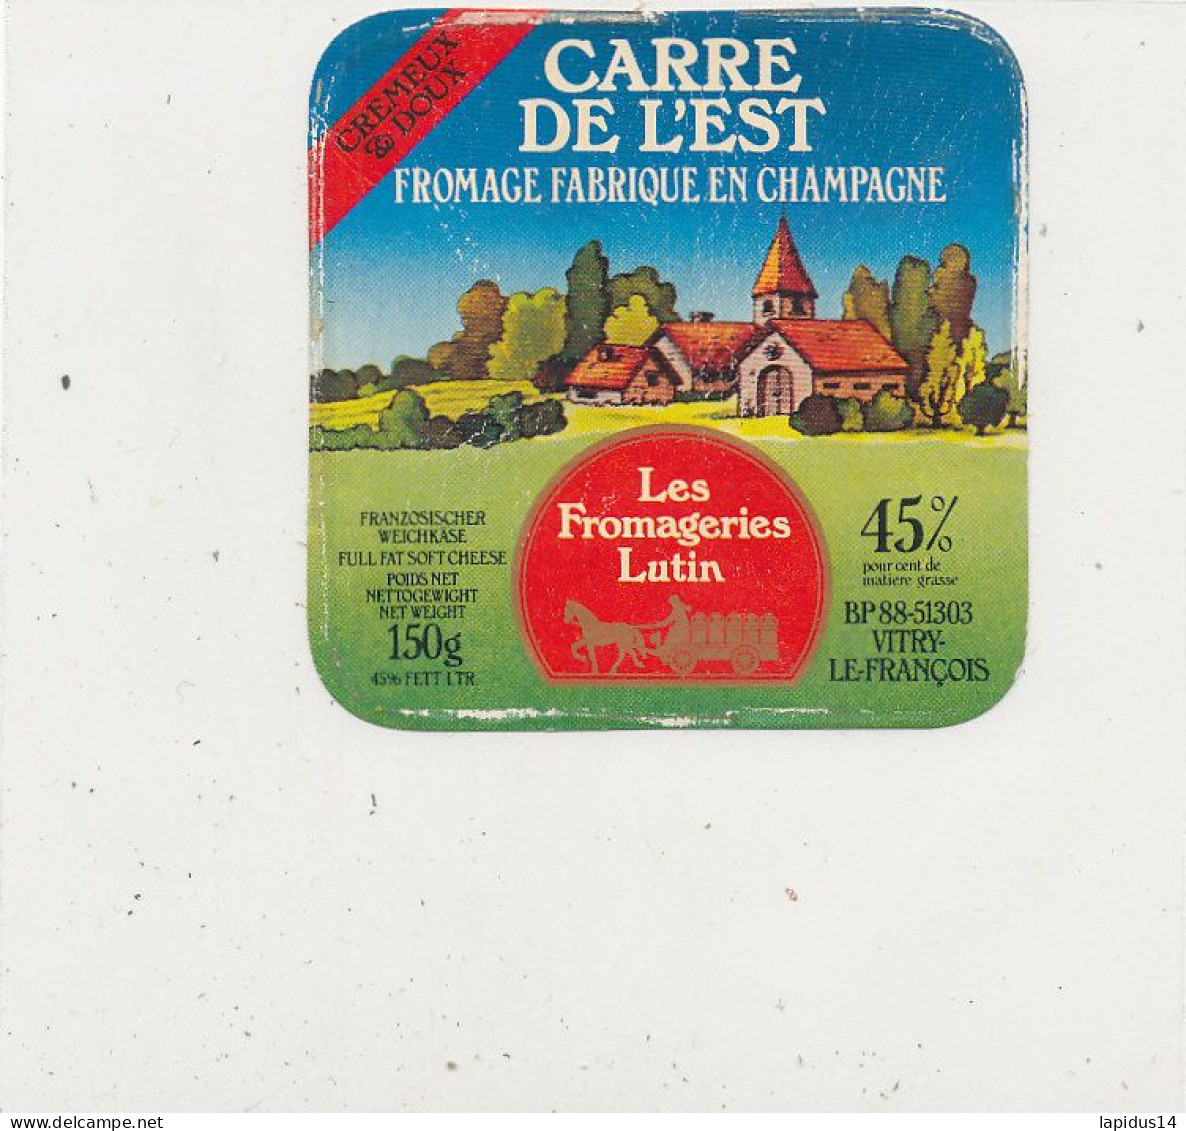 G G 354 /  ETIQUETTE DE FROMAGE   CARRE DE L'EST  FABRIQUE EN CHAMPAGNE  LES FROMAGERIES LUTIN - Cheese